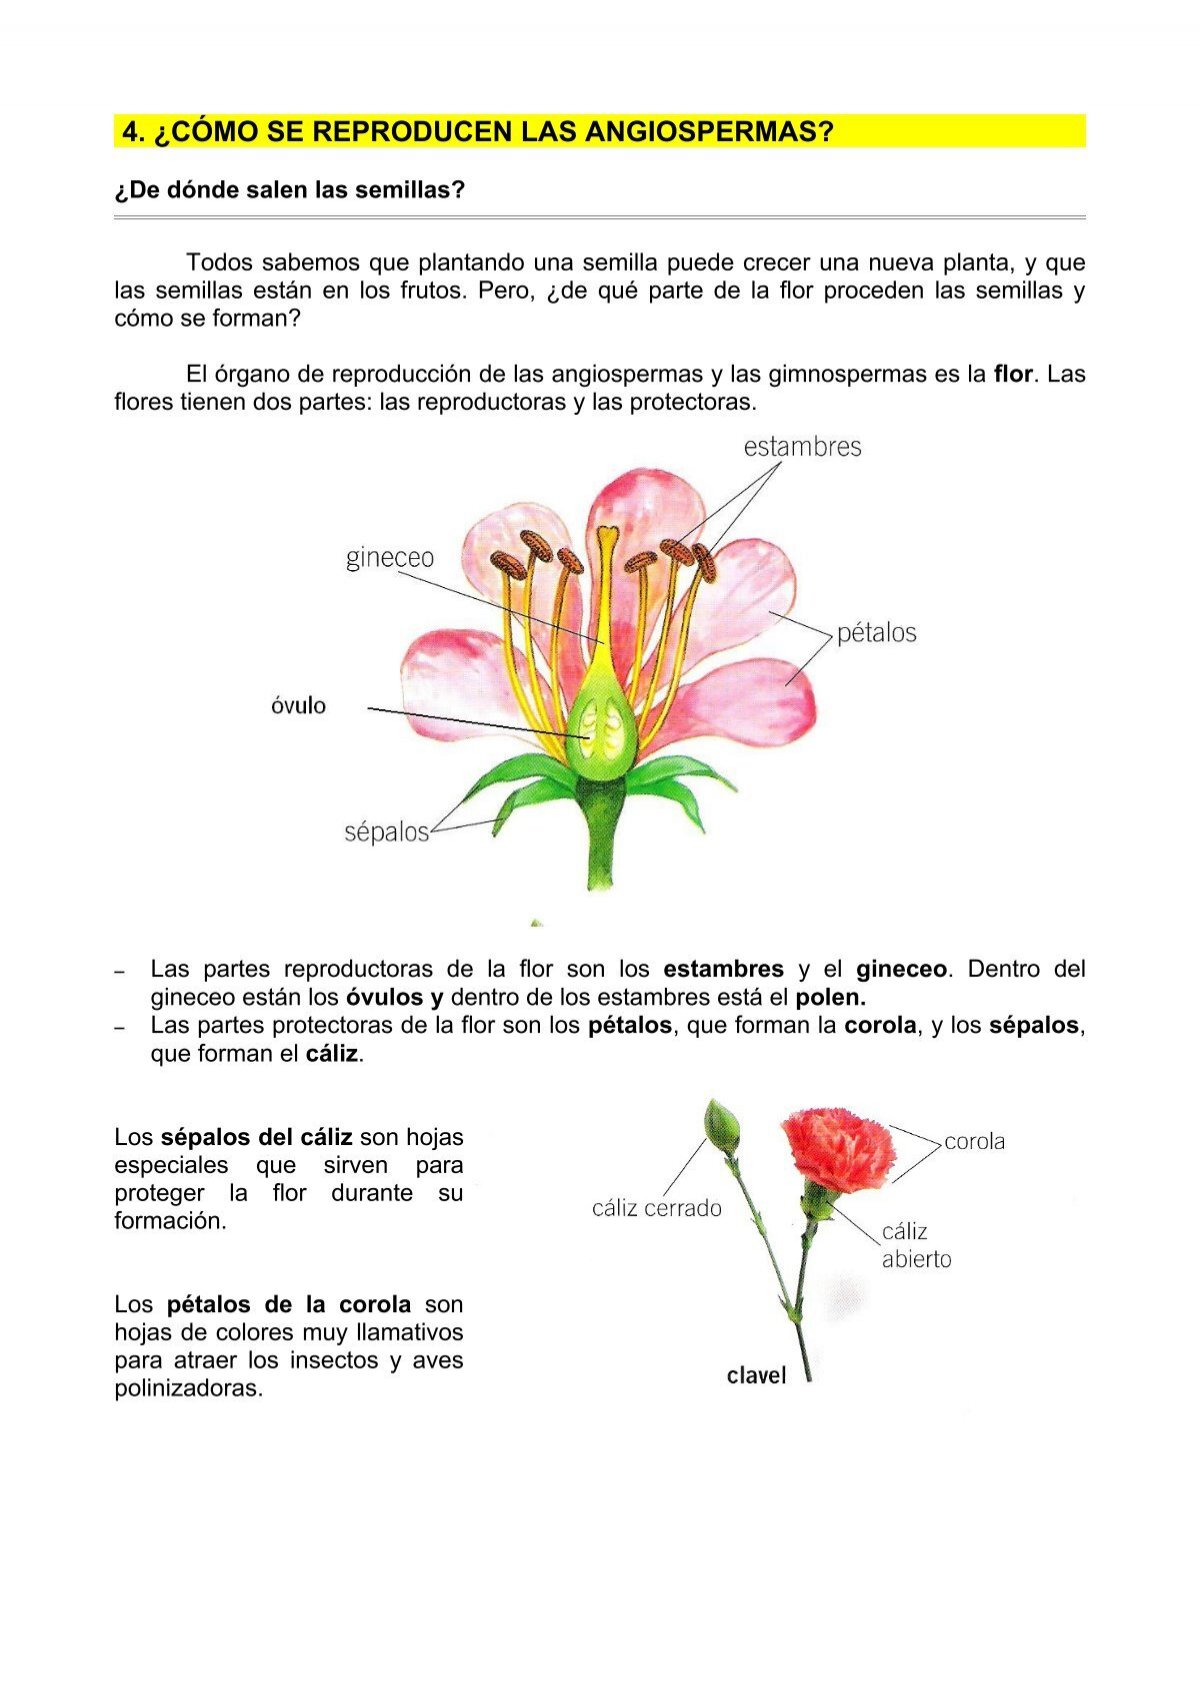 4. ¿cómo se reproducen las angiospermas? - Dolmen de Soto